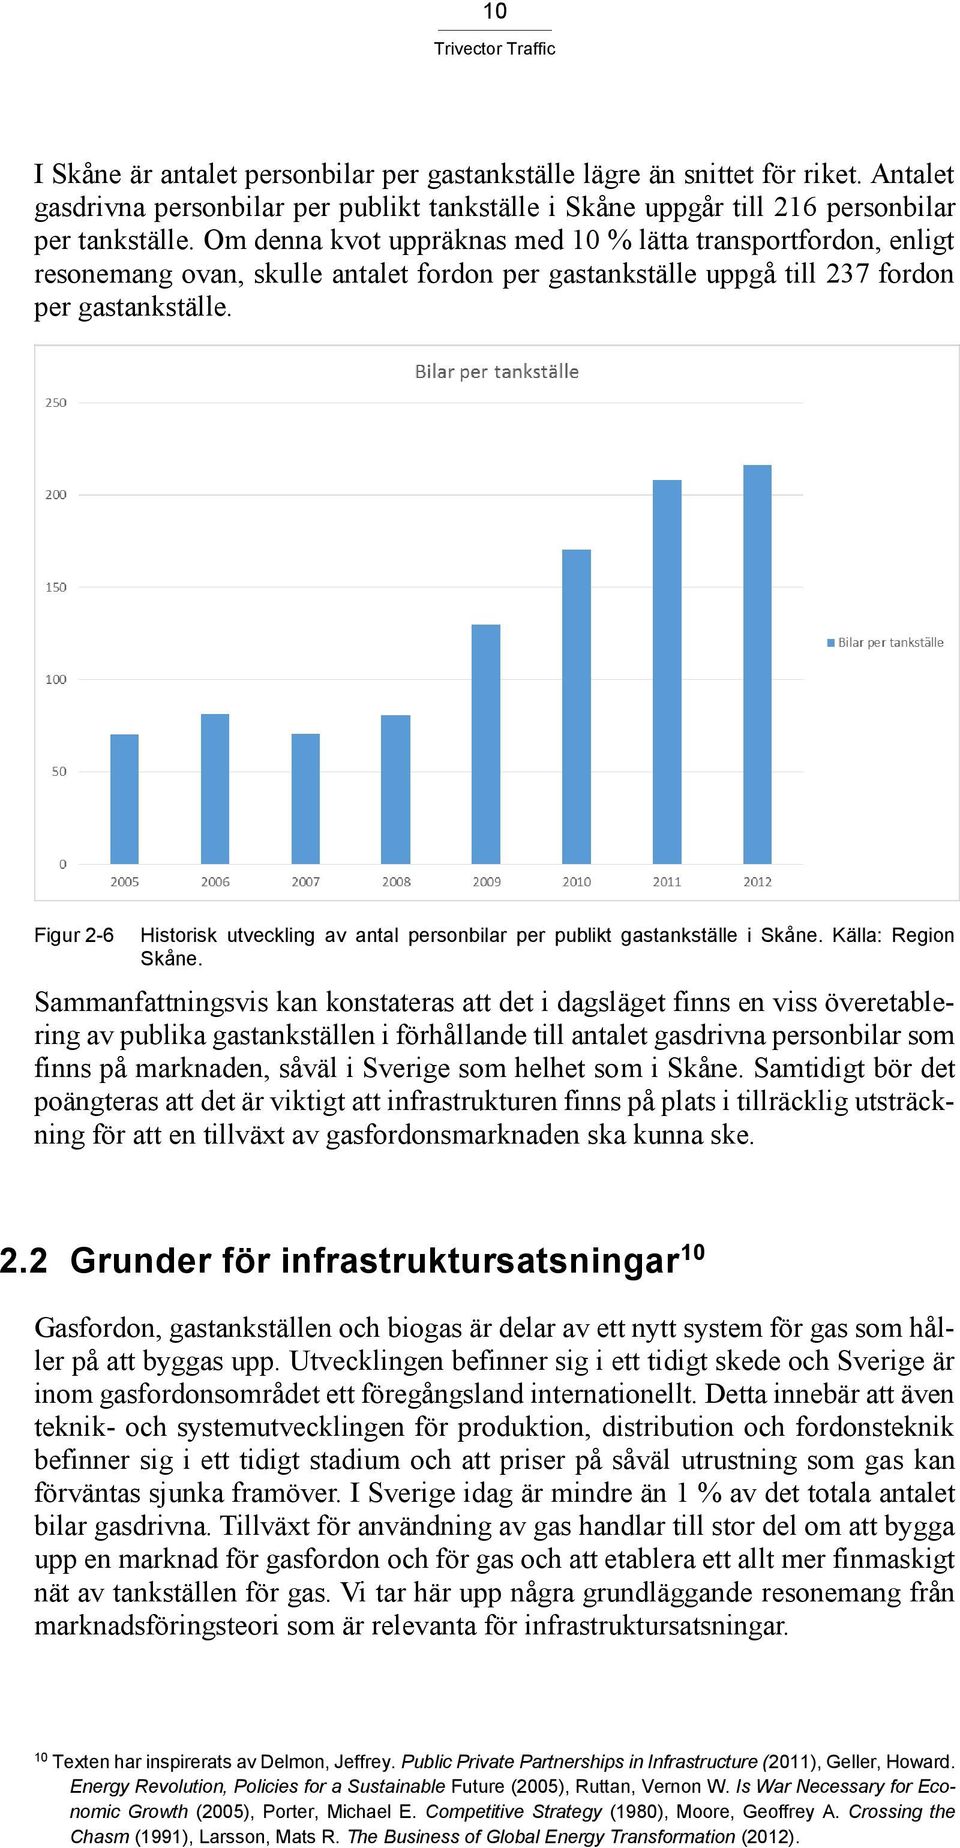 Figur 2-6 Historisk utveckling av antal personbilar per publikt gastankställe i Skåne. Källa: Region Skåne.